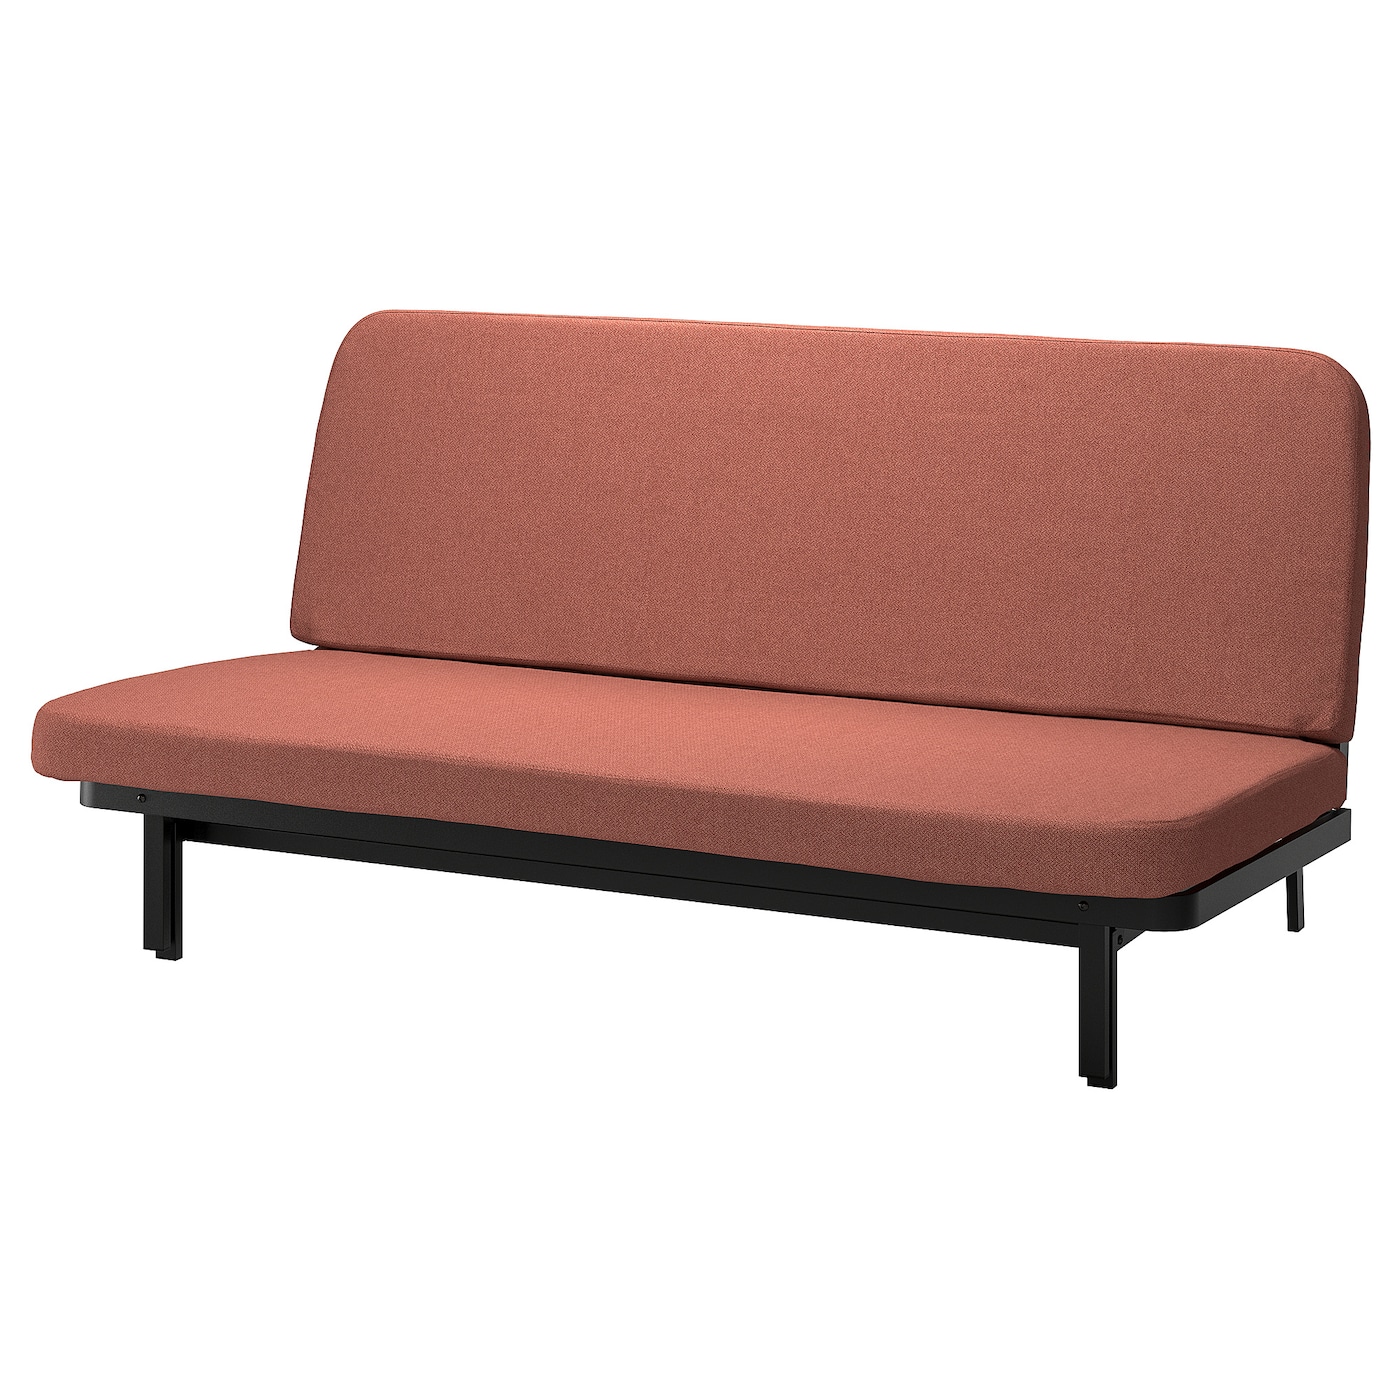 диван кровать портленд коричневый экокожа NYHAMN 3-местный диван-кровать, пружинный матрас в комплекте/Скартофта красный/коричневый IKEA